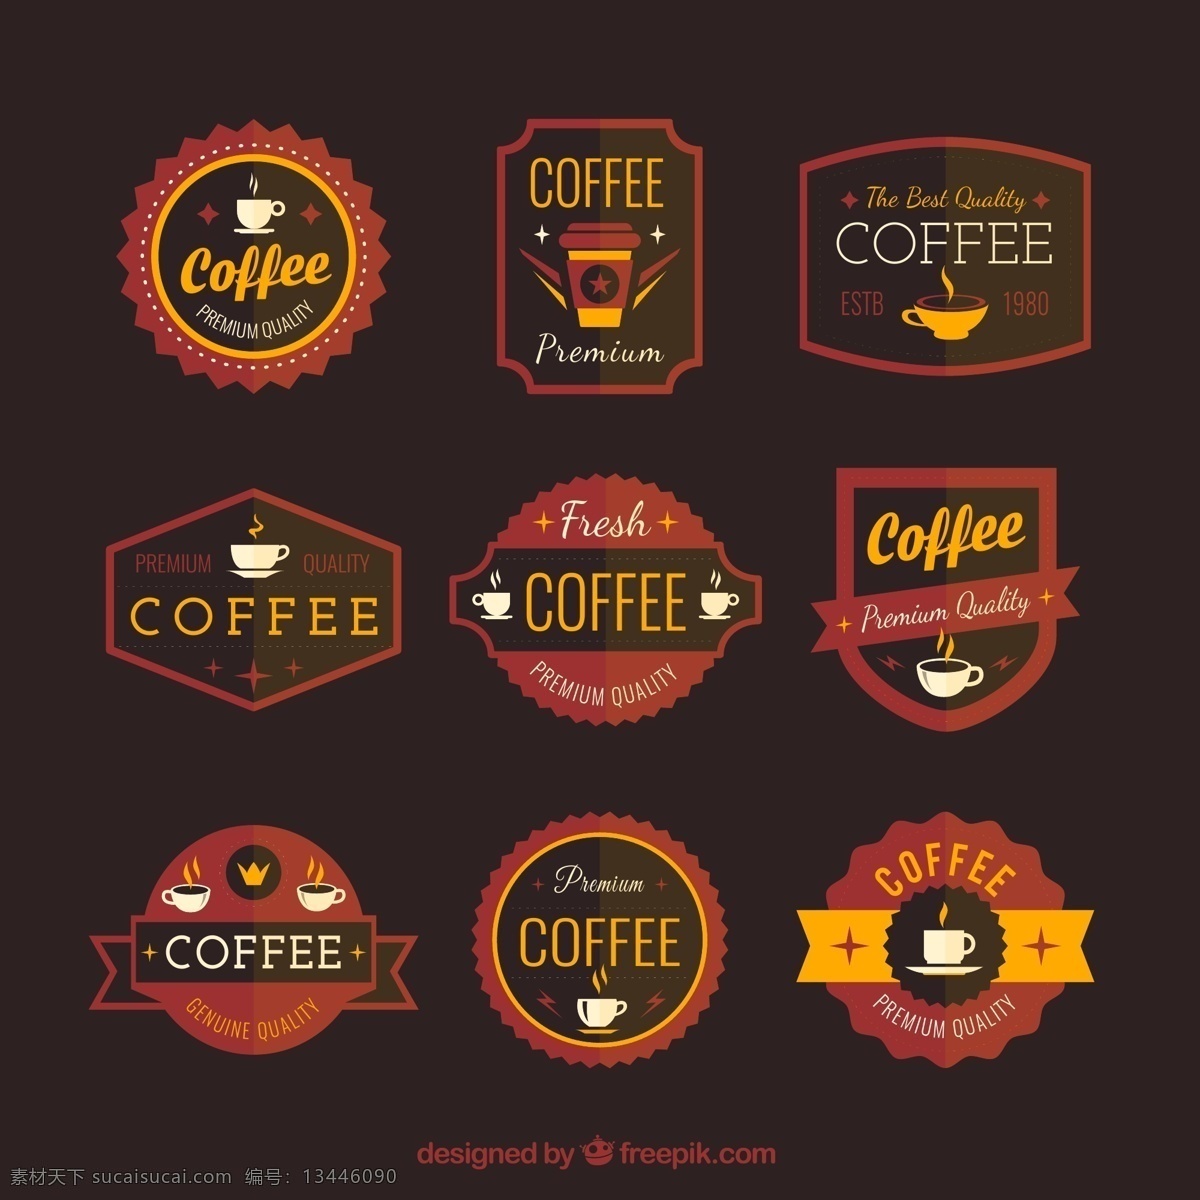 咖啡图标 咖啡标签 矢量素材 餐饮 商标 丝带 标签 咖啡 扁平化 咖啡杯 coffee 时尚 ai格式 矢量花型 标志图标 公共标识标志 黑色